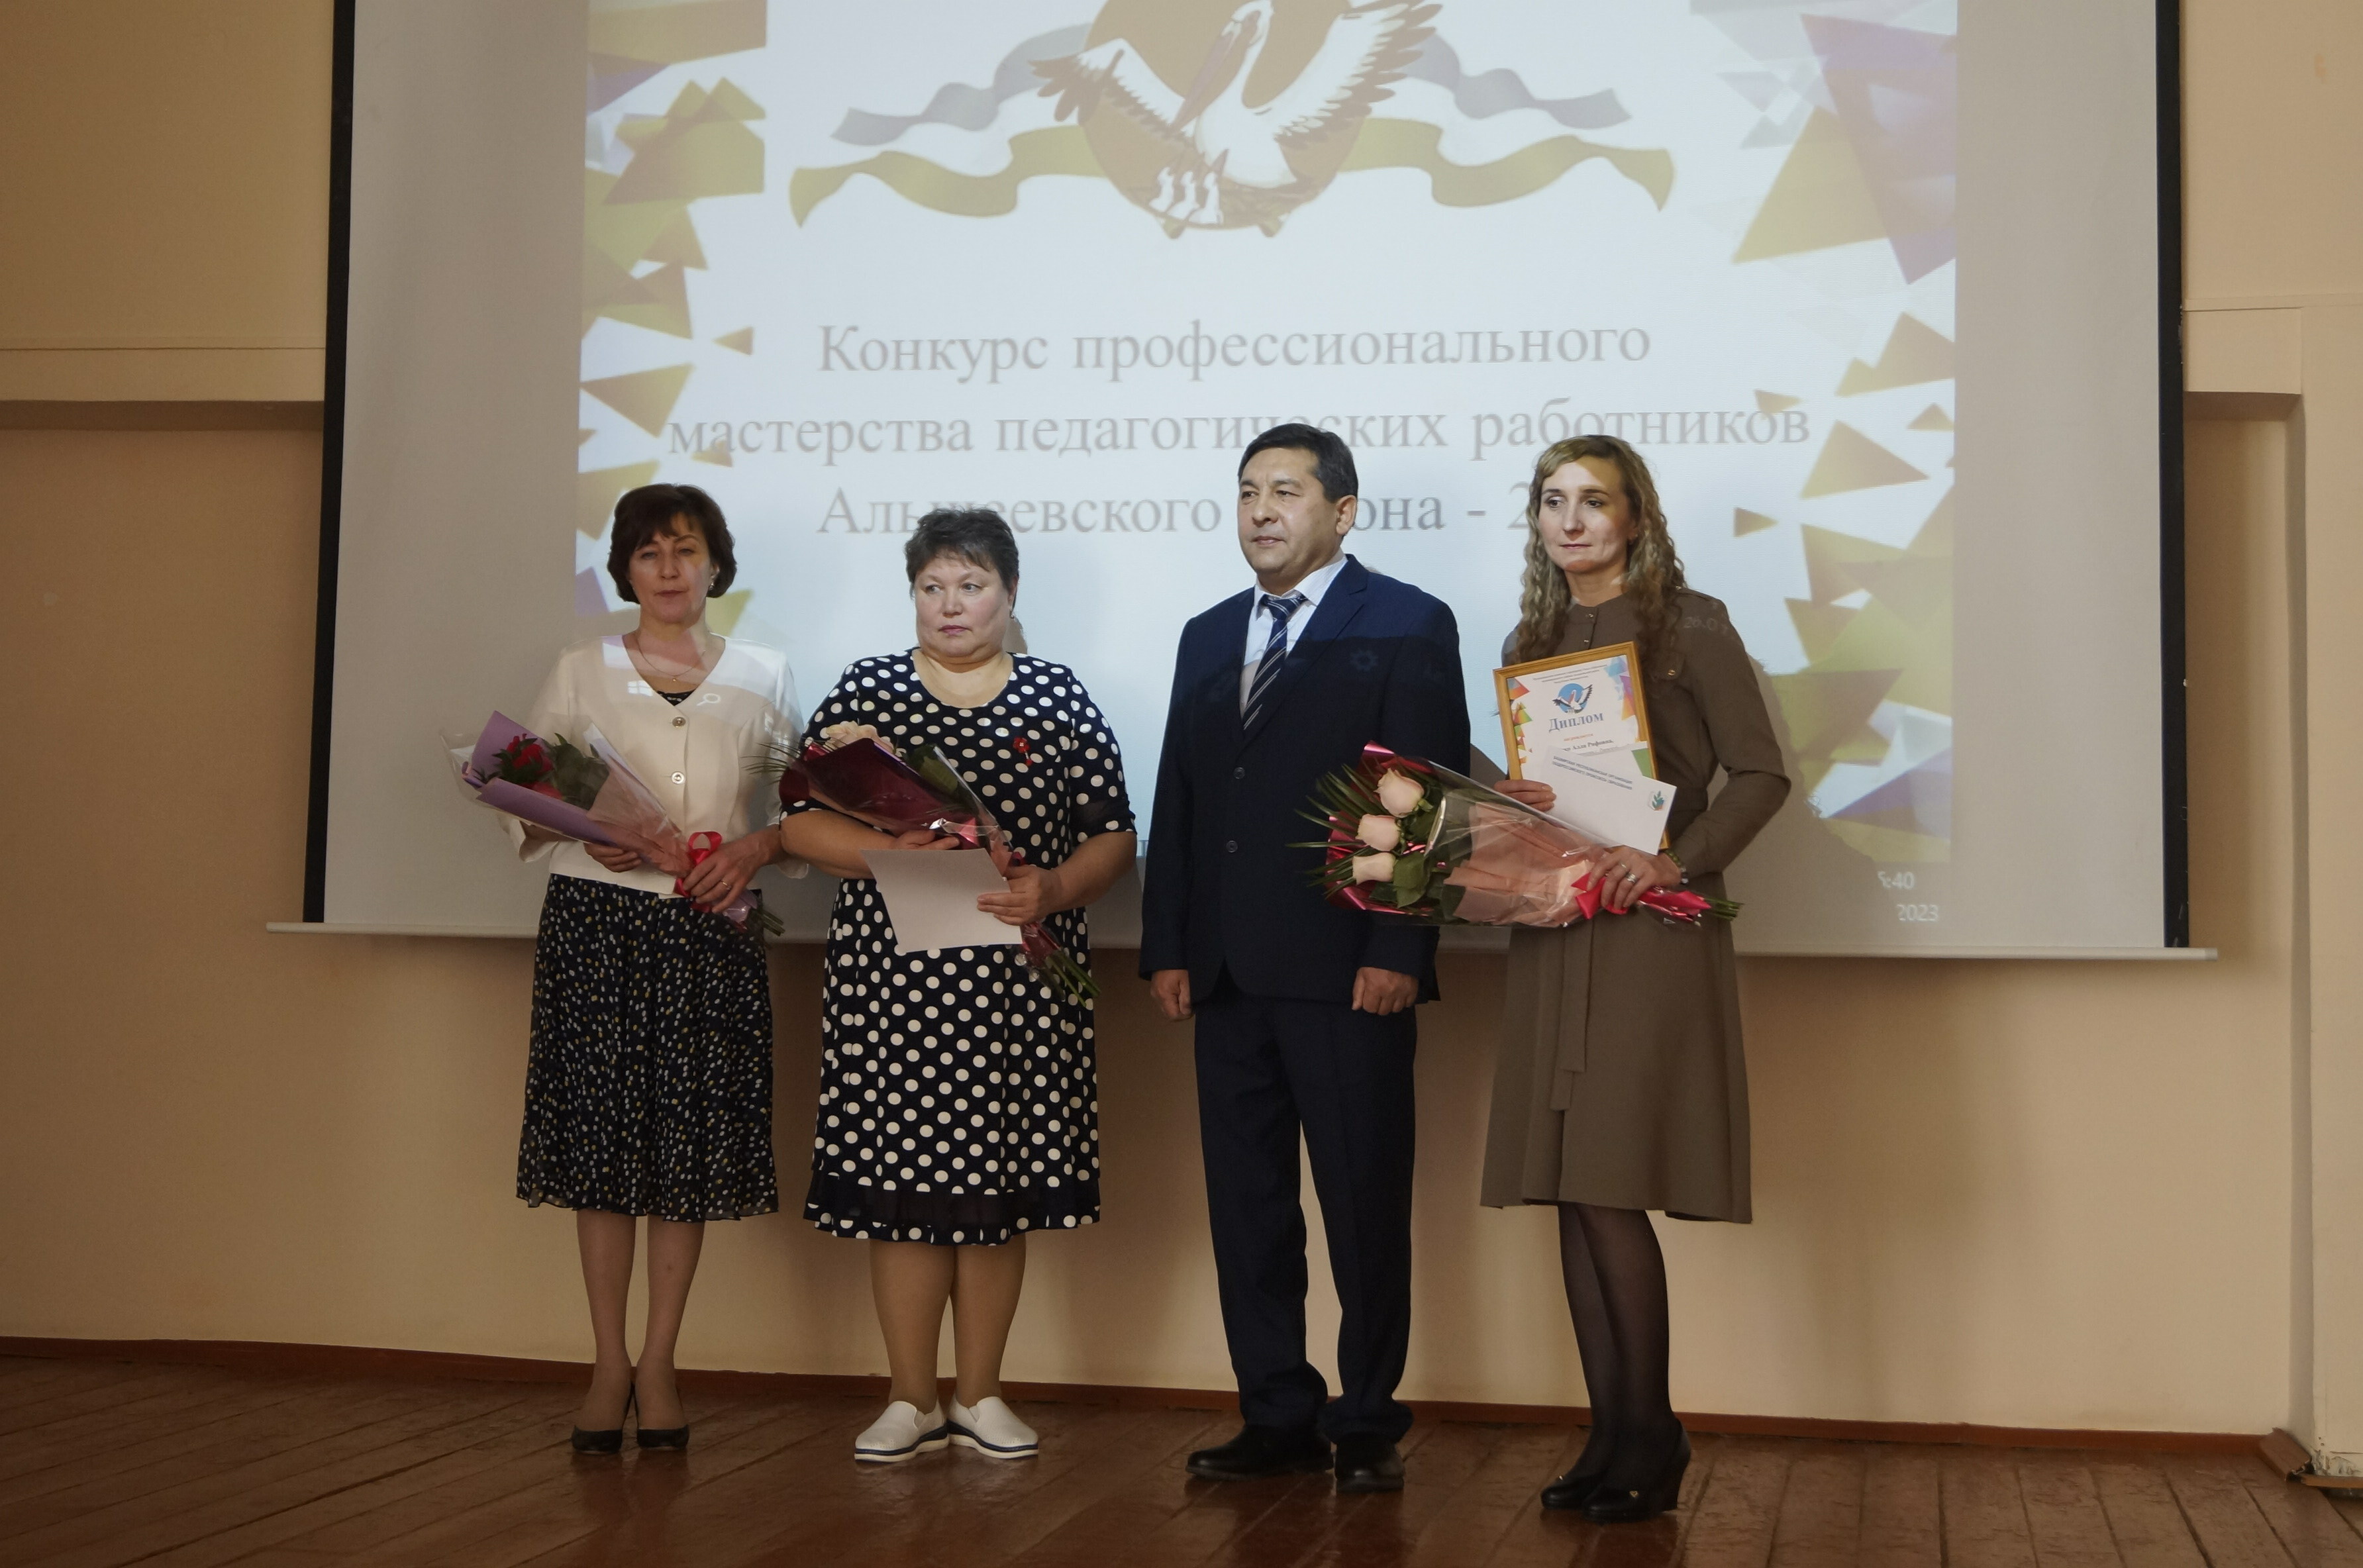 В Альшеевском районе прошел традиционный конкурс профессионального мастерства «Учитель года-2023»